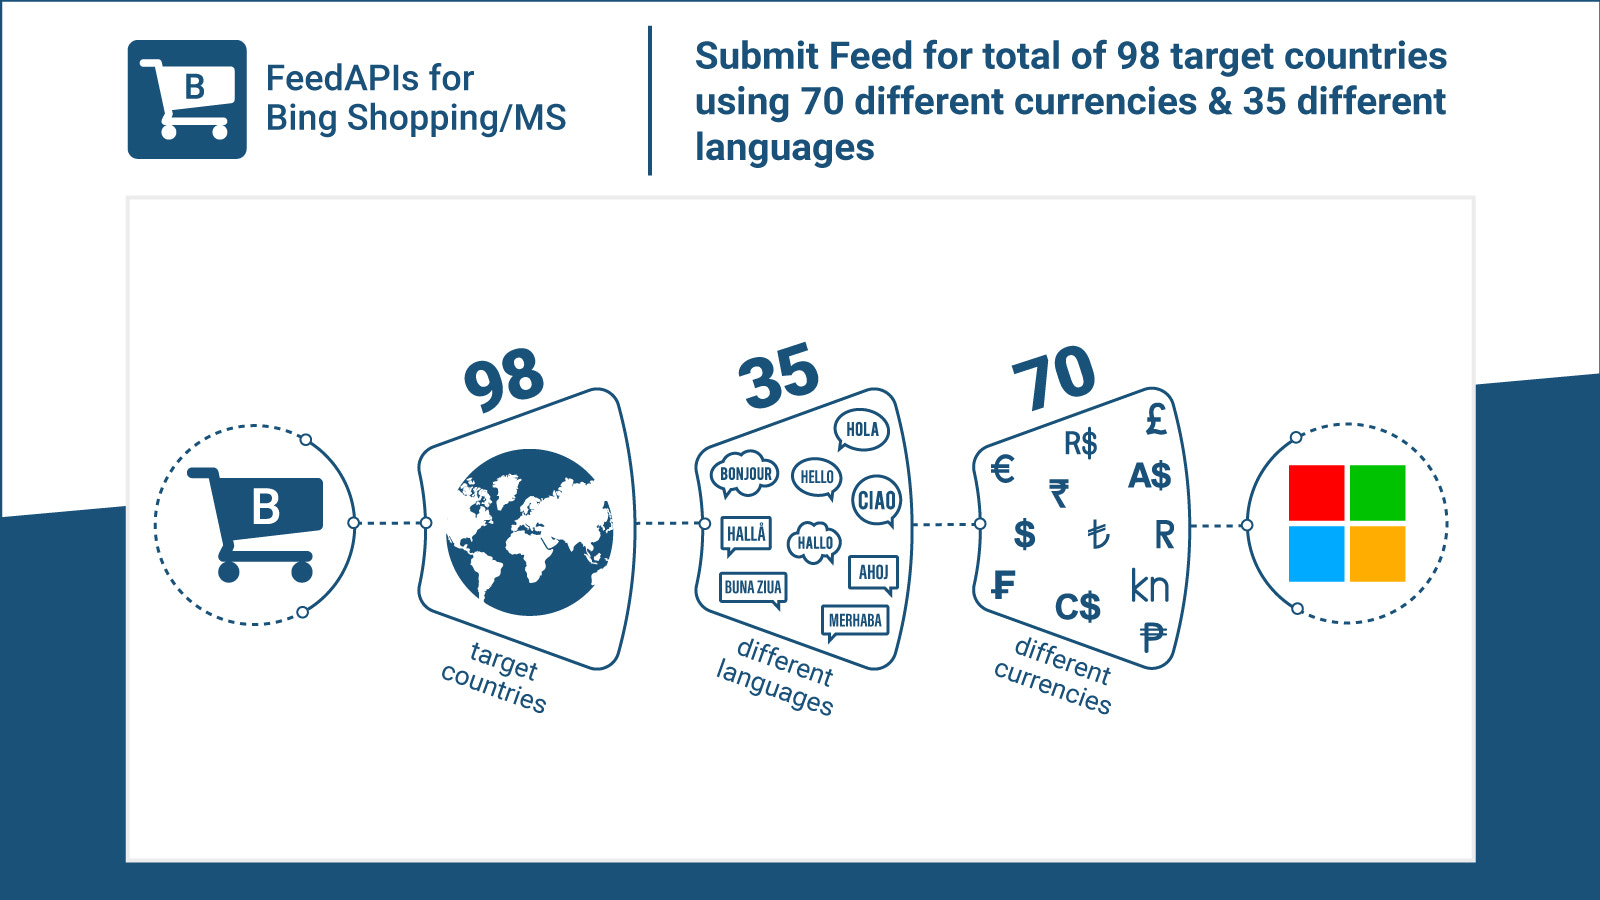 Enviar feed para 98 países utilizando 35 idiomas y 70 monedas